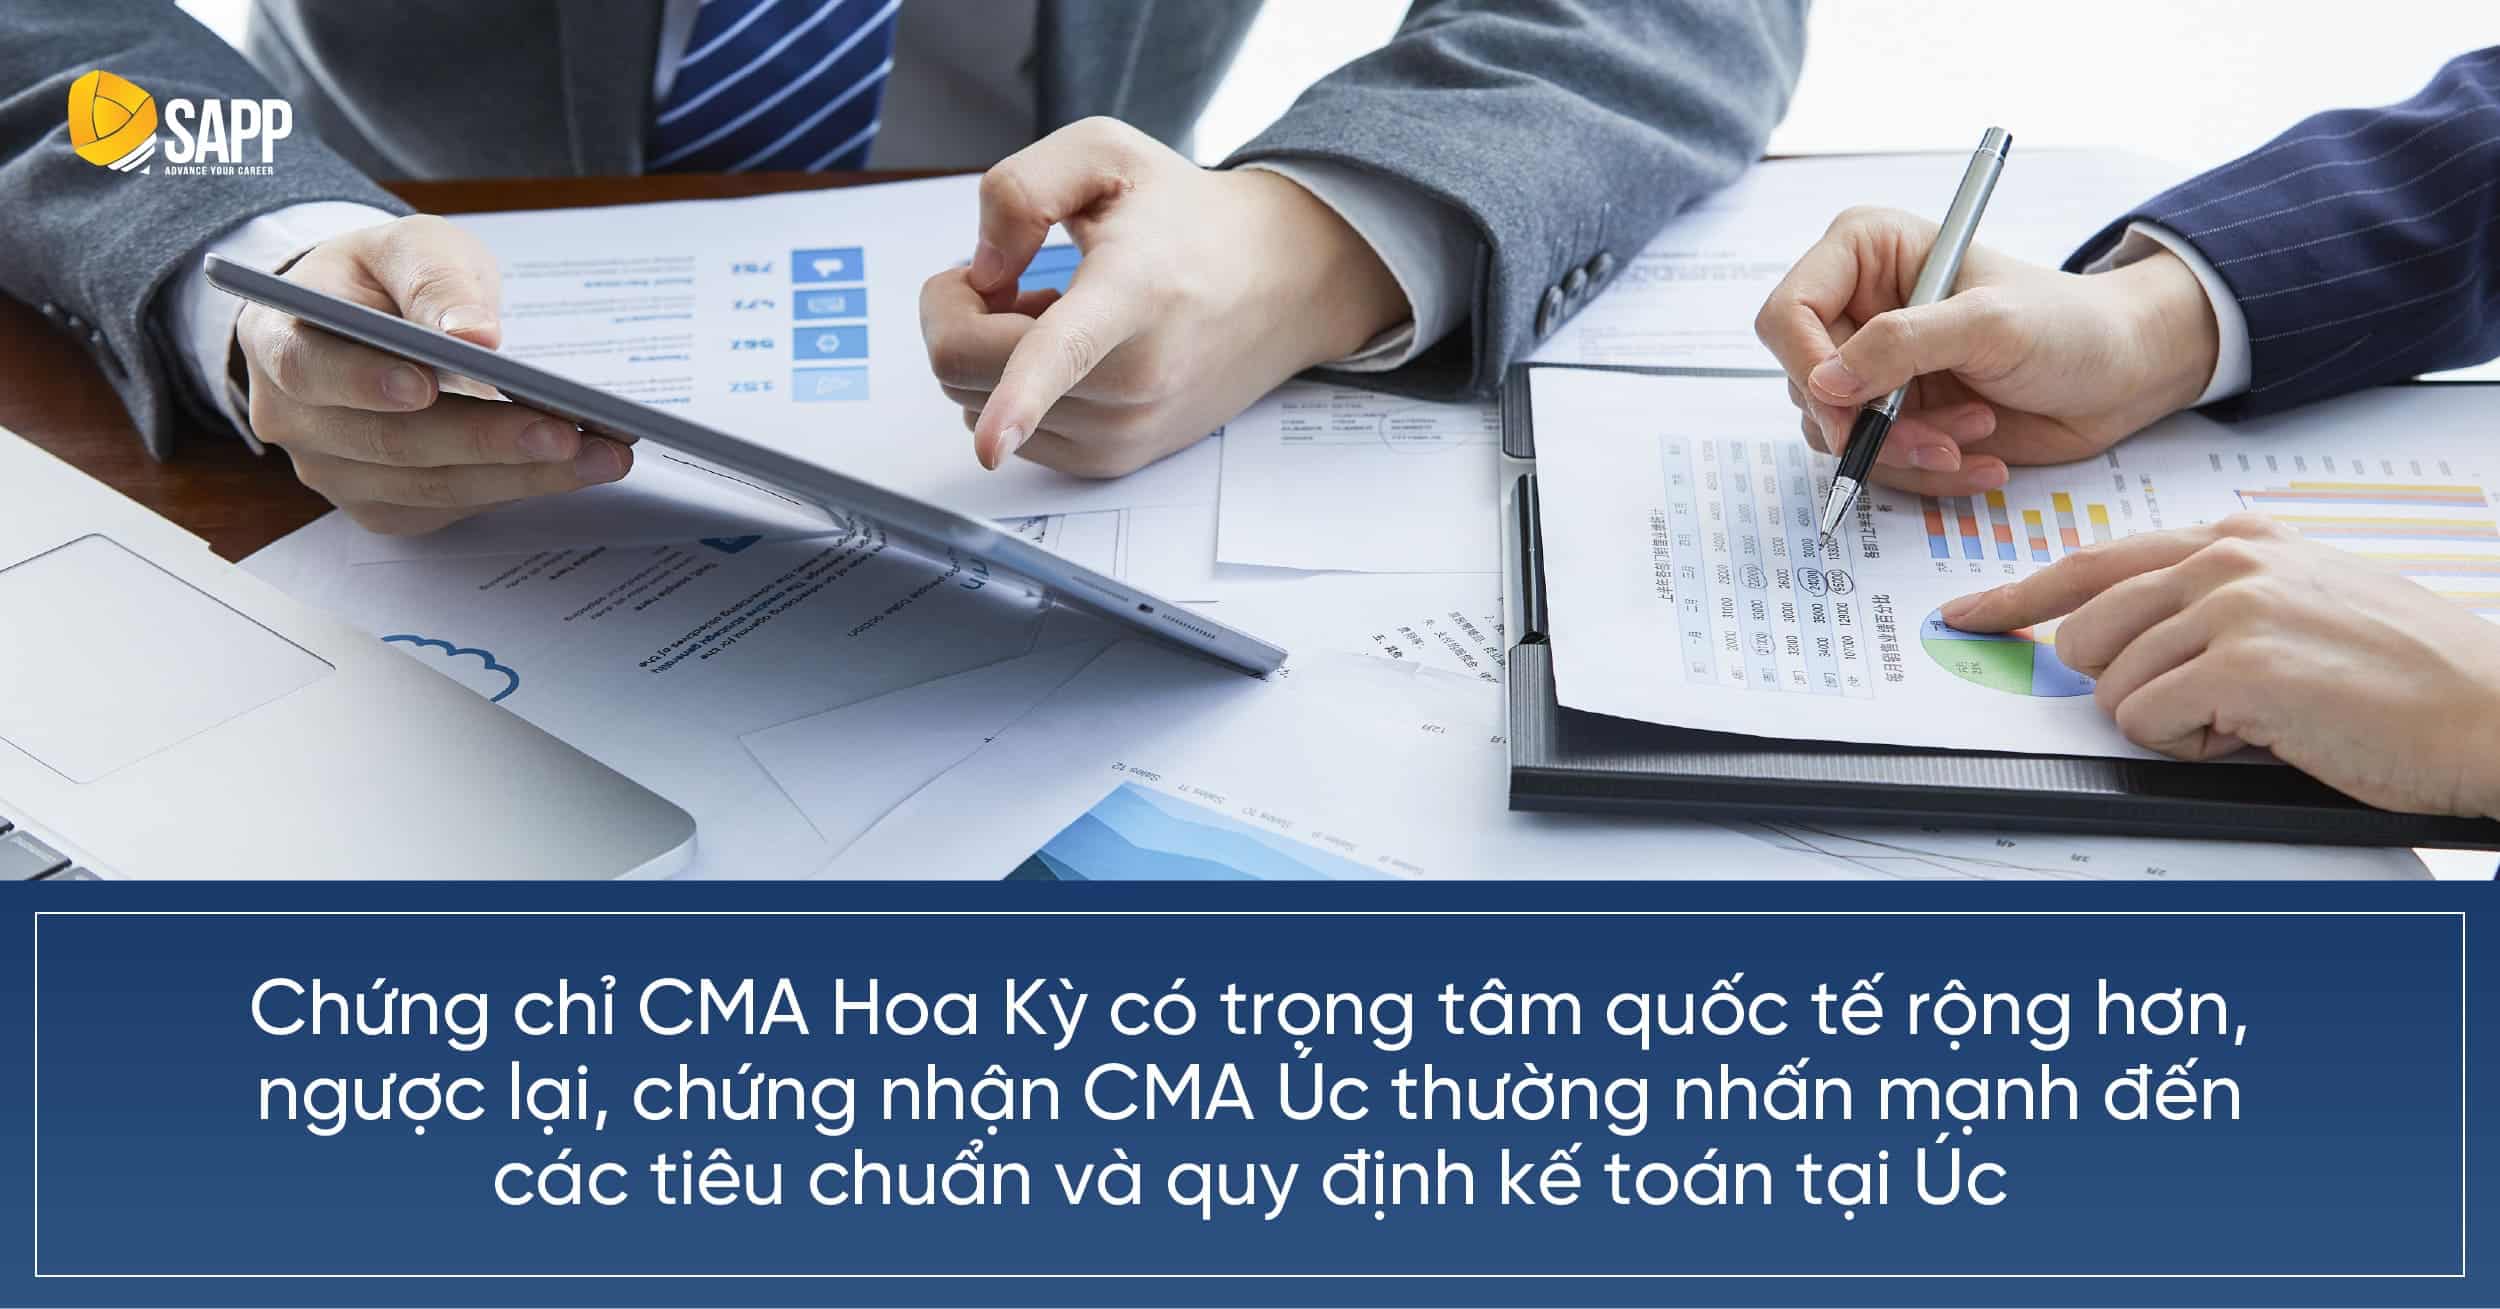 Chứng chỉ CMA Hoa Kỳ có trọng tâm quốc tế rộng hơn, ngược lại, chứng nhận CMA Úc thường nhấn mạnh đến các tiêu chuẩn và quy định kế toán tại Úc